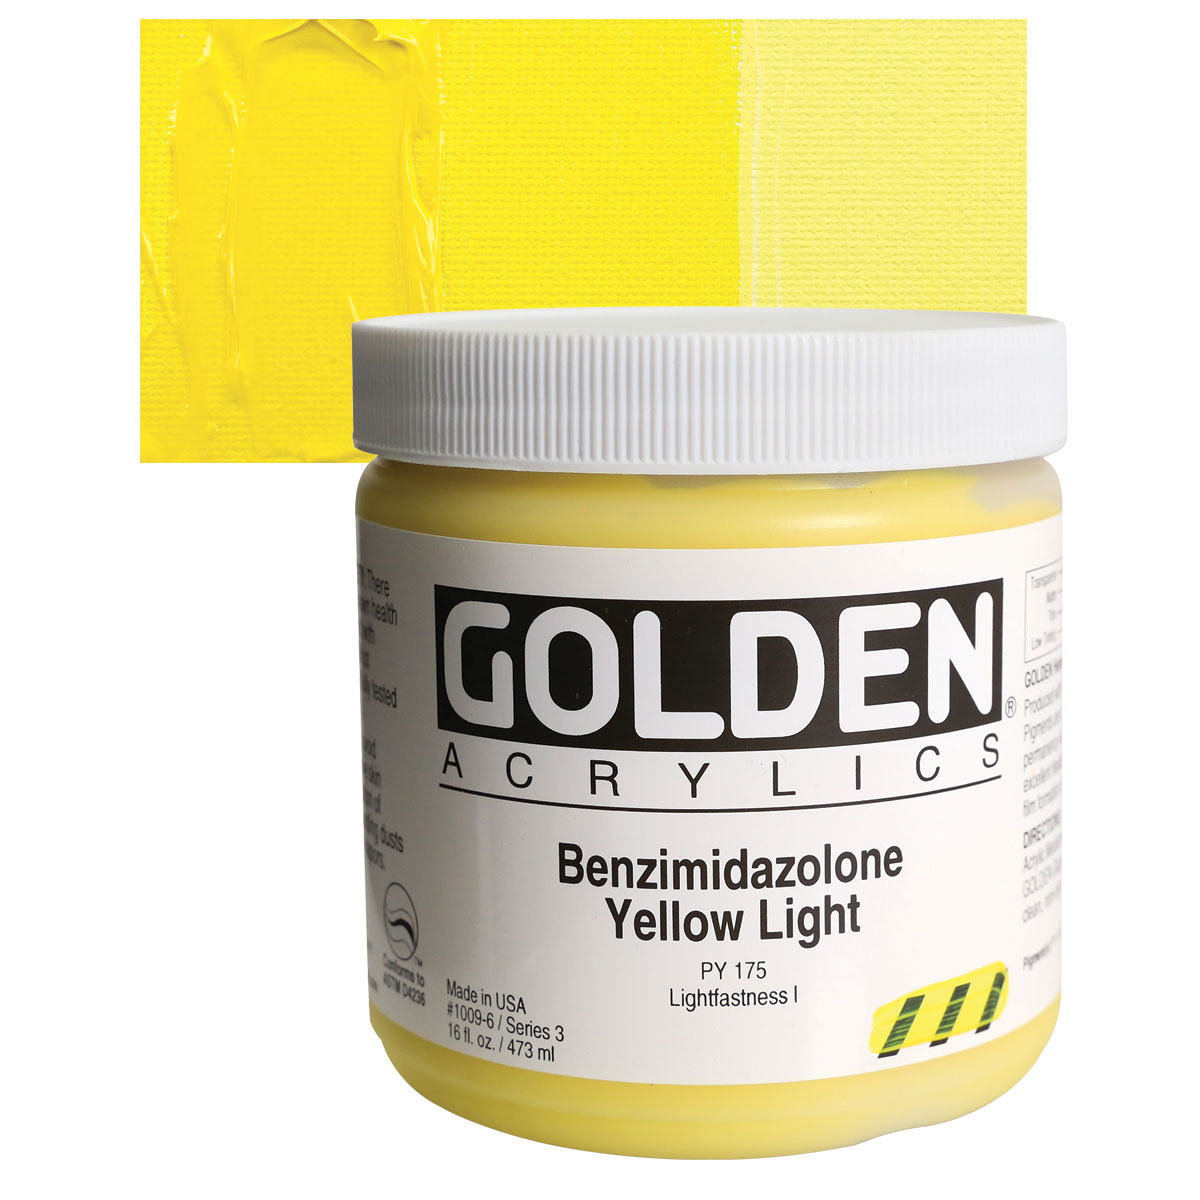 Golden Open Acrylic Benzimidazolone Yellow Light 2 oz.